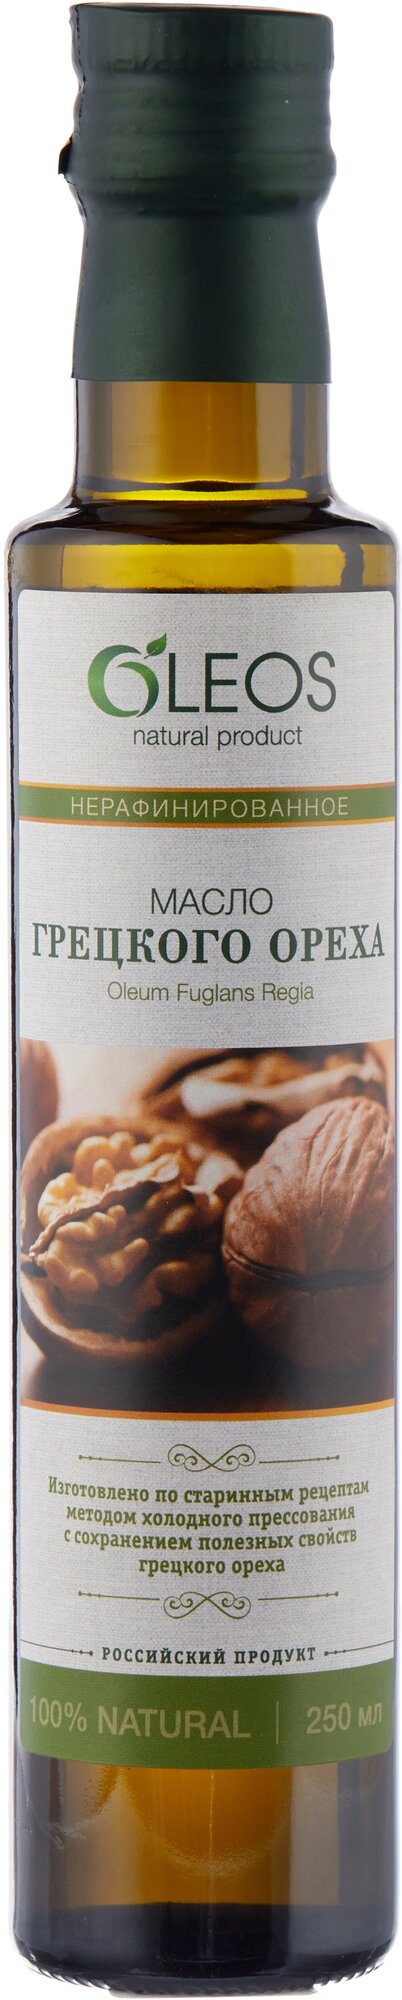 Пищевое масло Грецкого ореха 250 мл FMCG стекло зеленое, Oleos